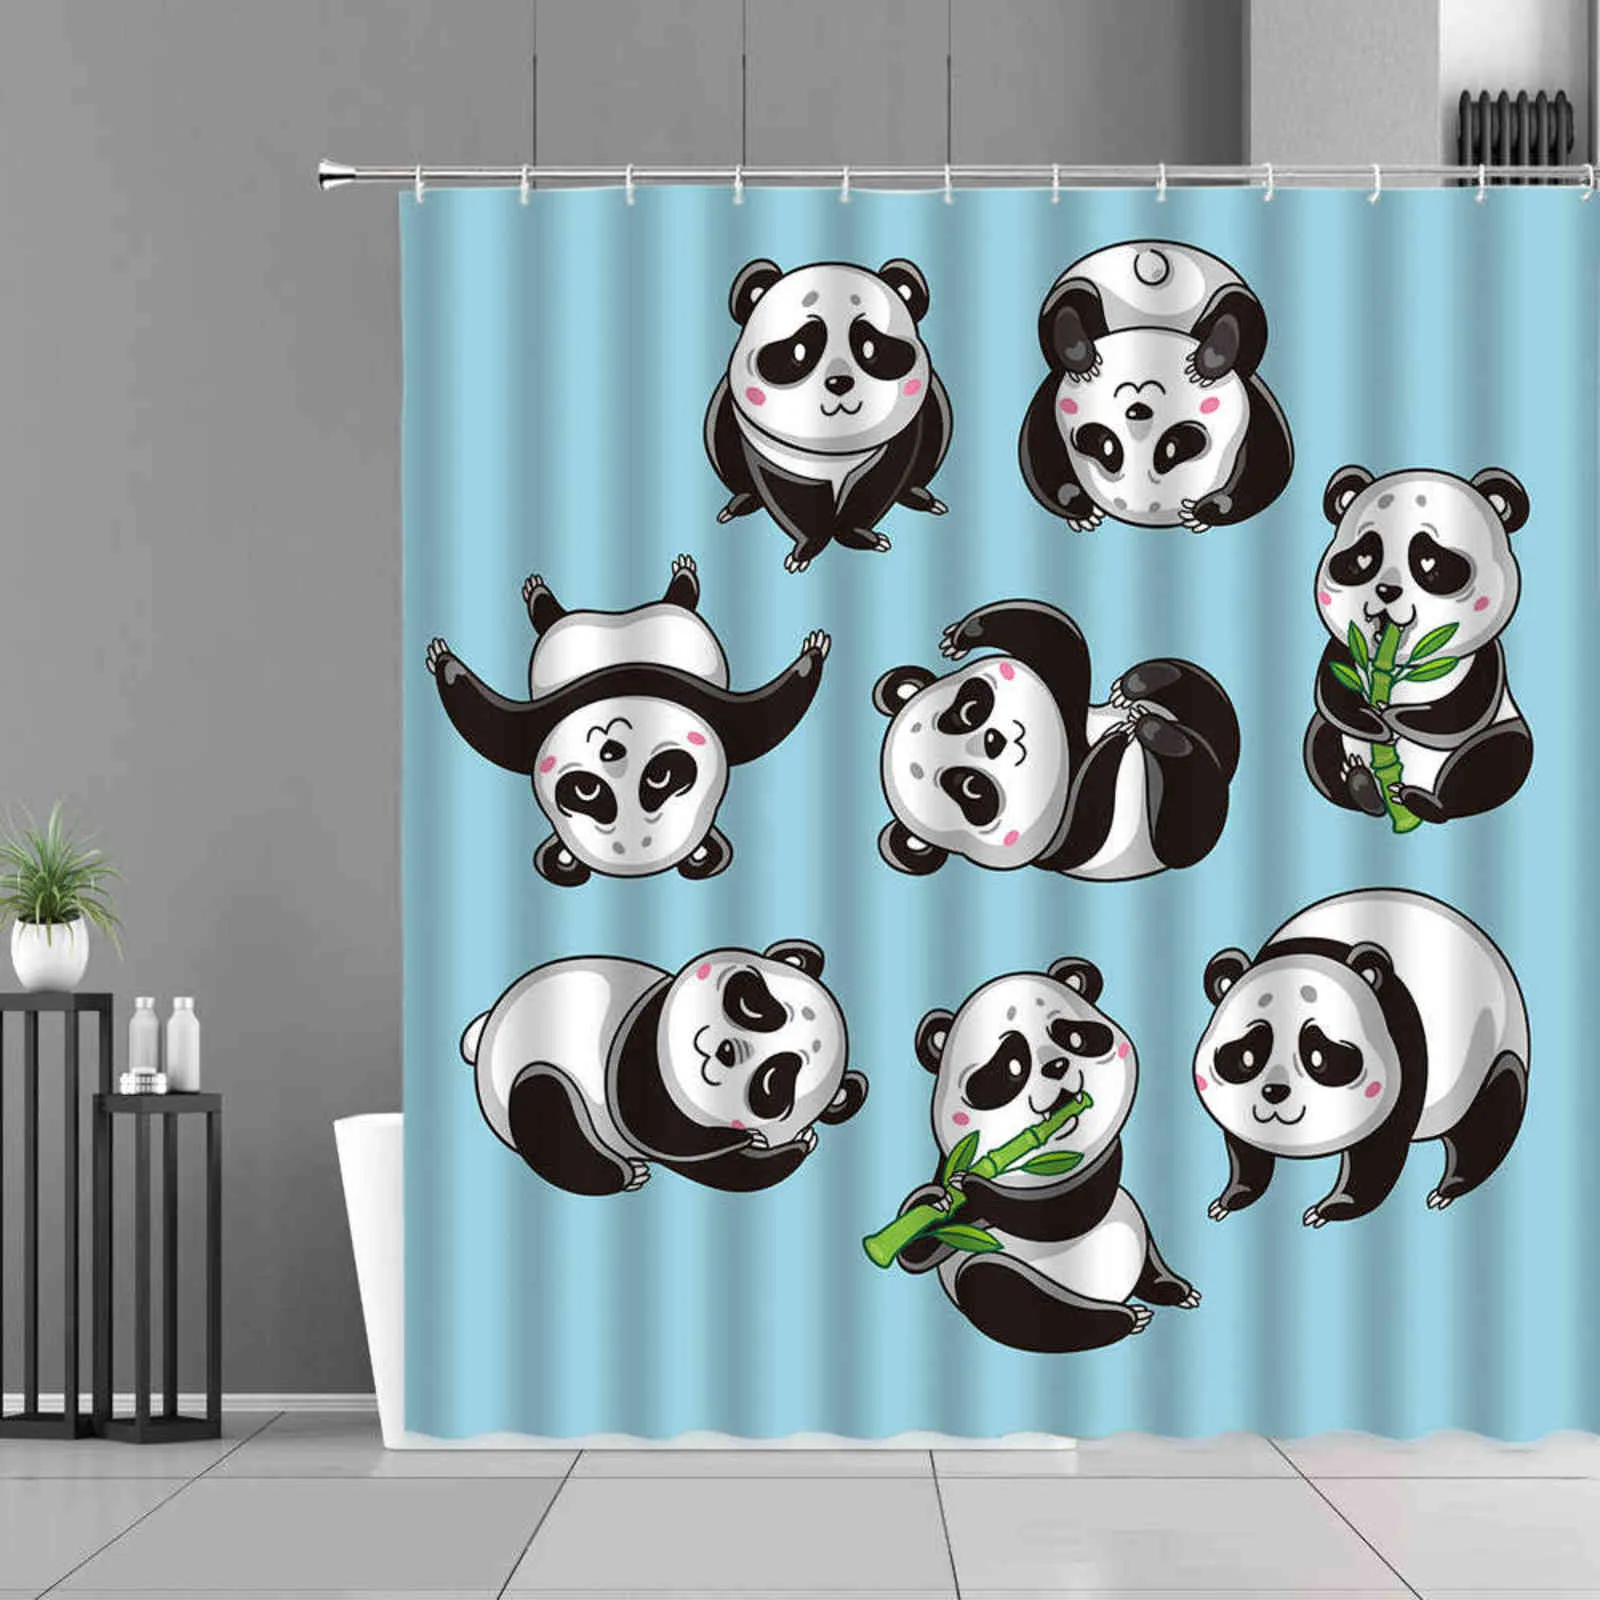 Cortina de chuveiro de panda dos desenhos animados Cute animais pandas plantas de bambu verde impressão cortinas de banho cortinas de crianças decoração banheiro impermeável 211116